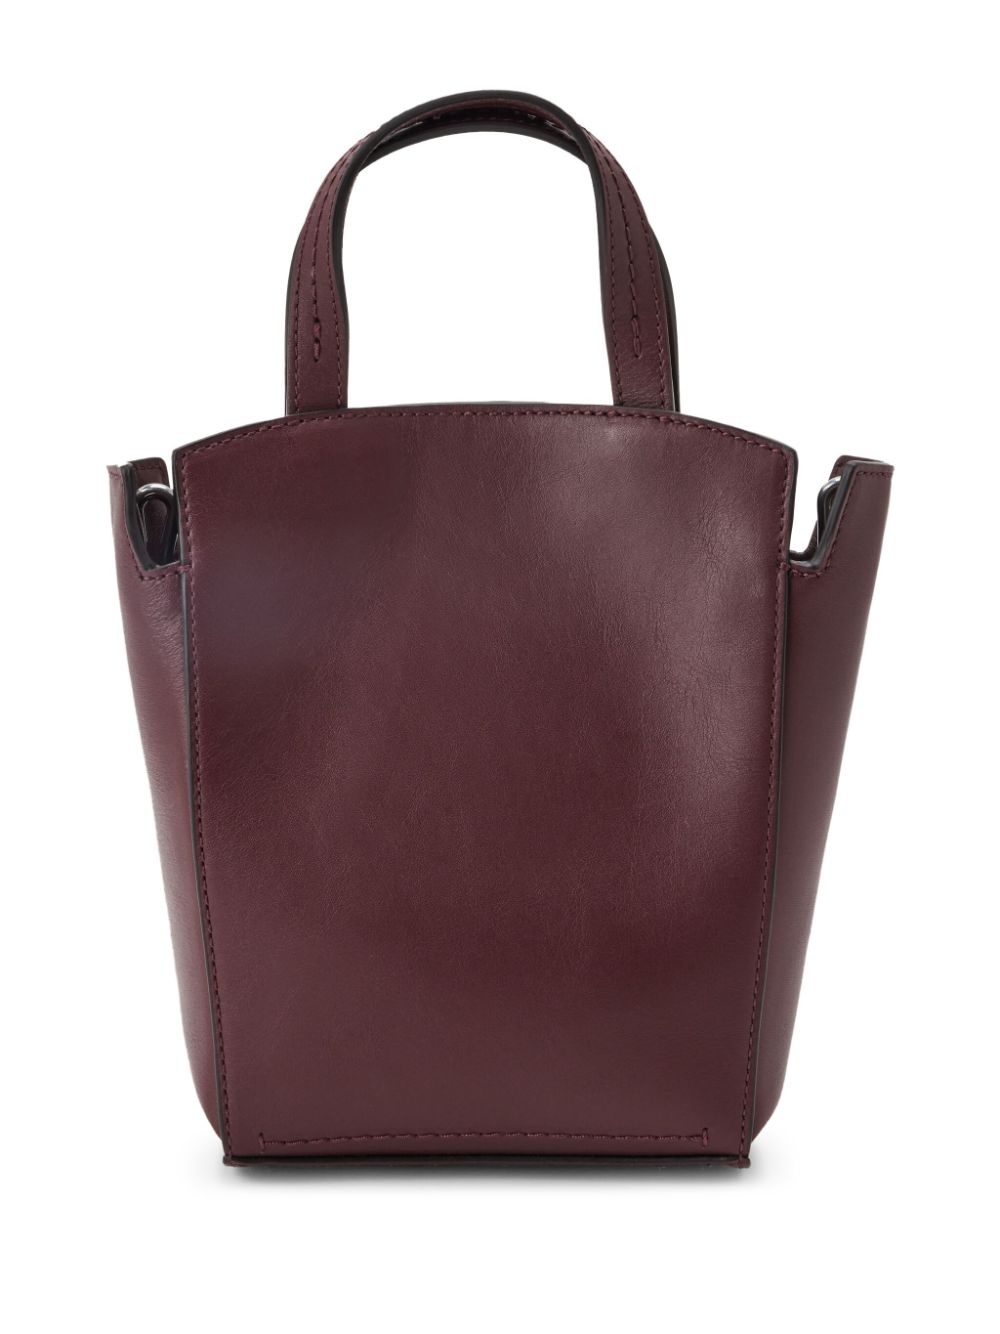 Clovelly leather mini bag - 2